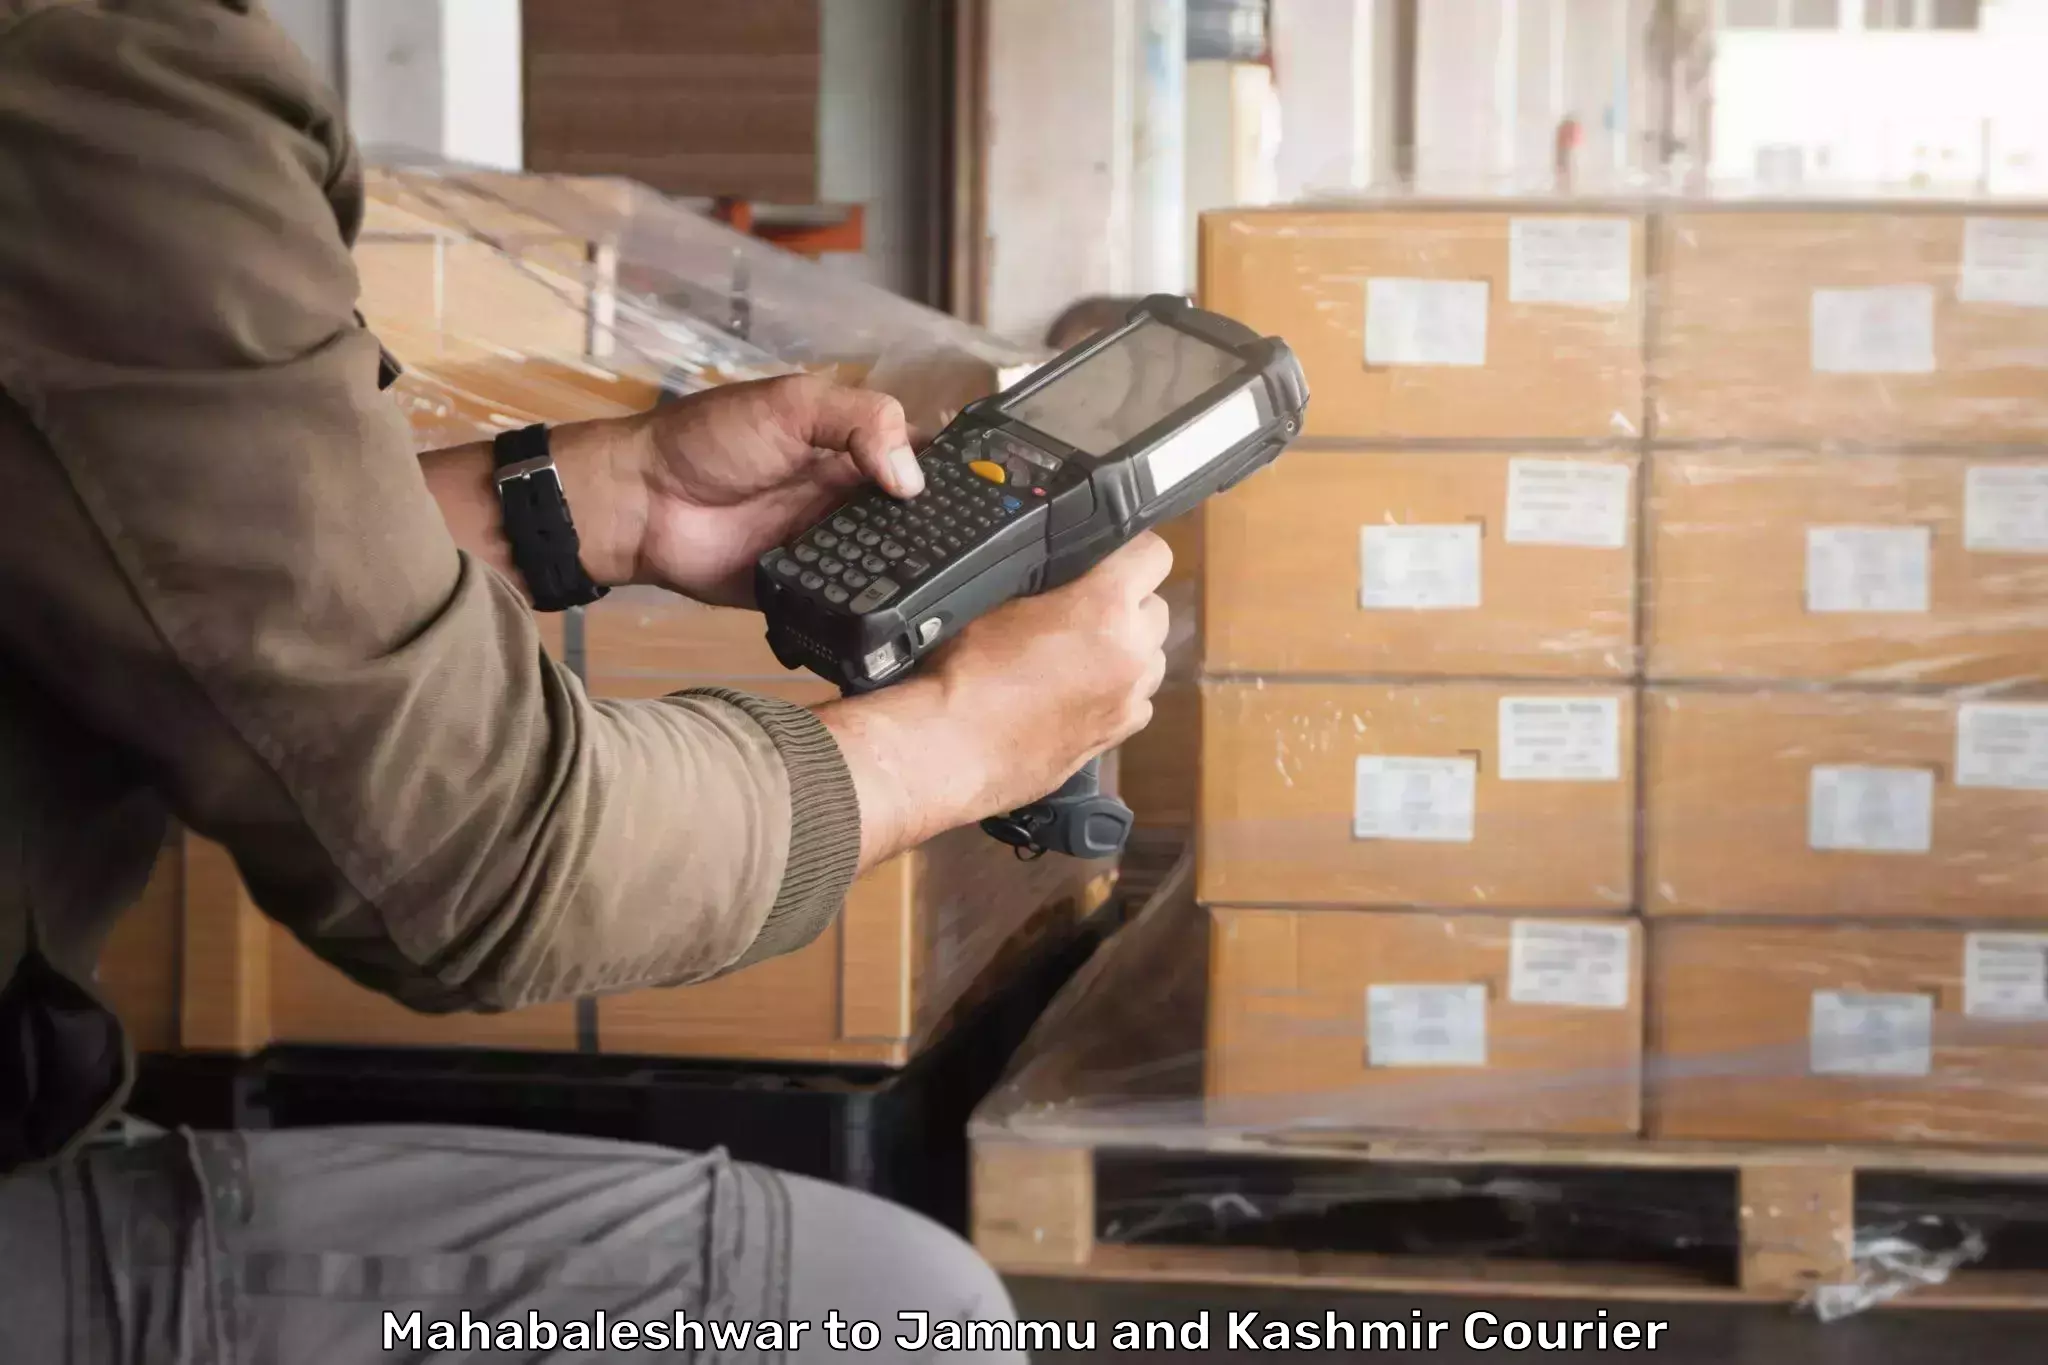 Courier service booking Mahabaleshwar to Srinagar Kashmir